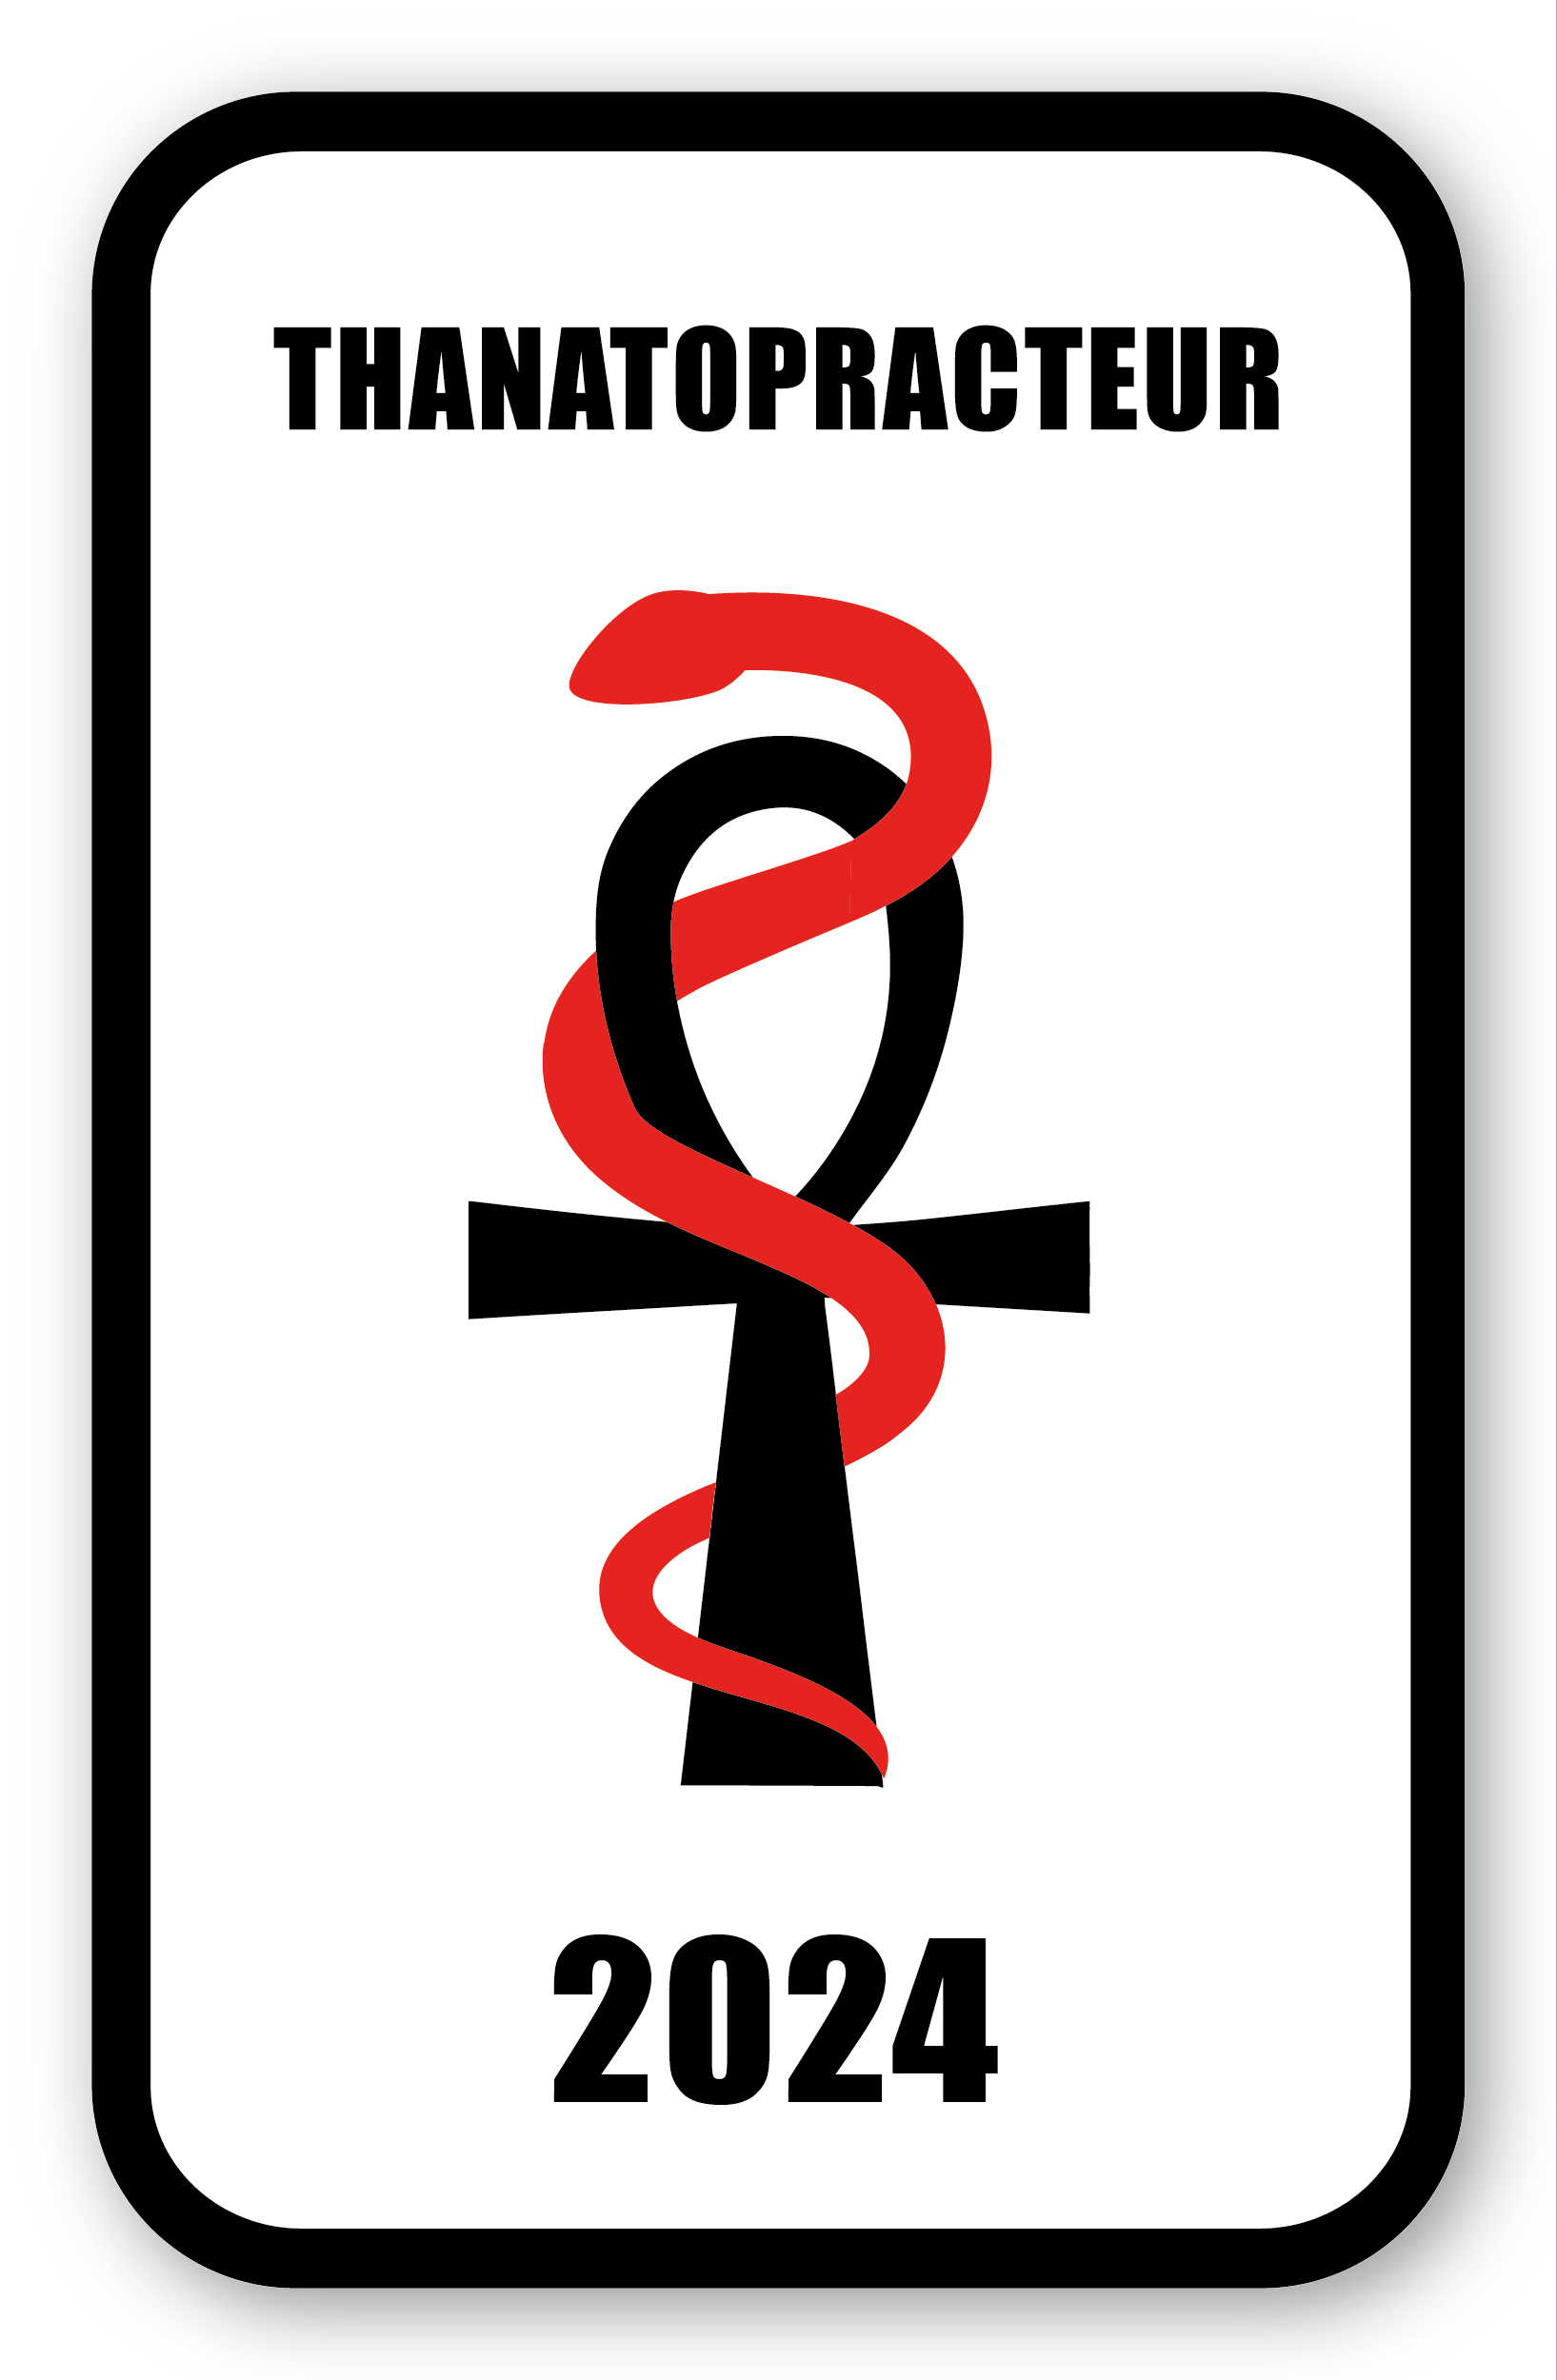 Autocollant Sticker - Vignette Caducée 2024 Thanatopracteur pour Pare